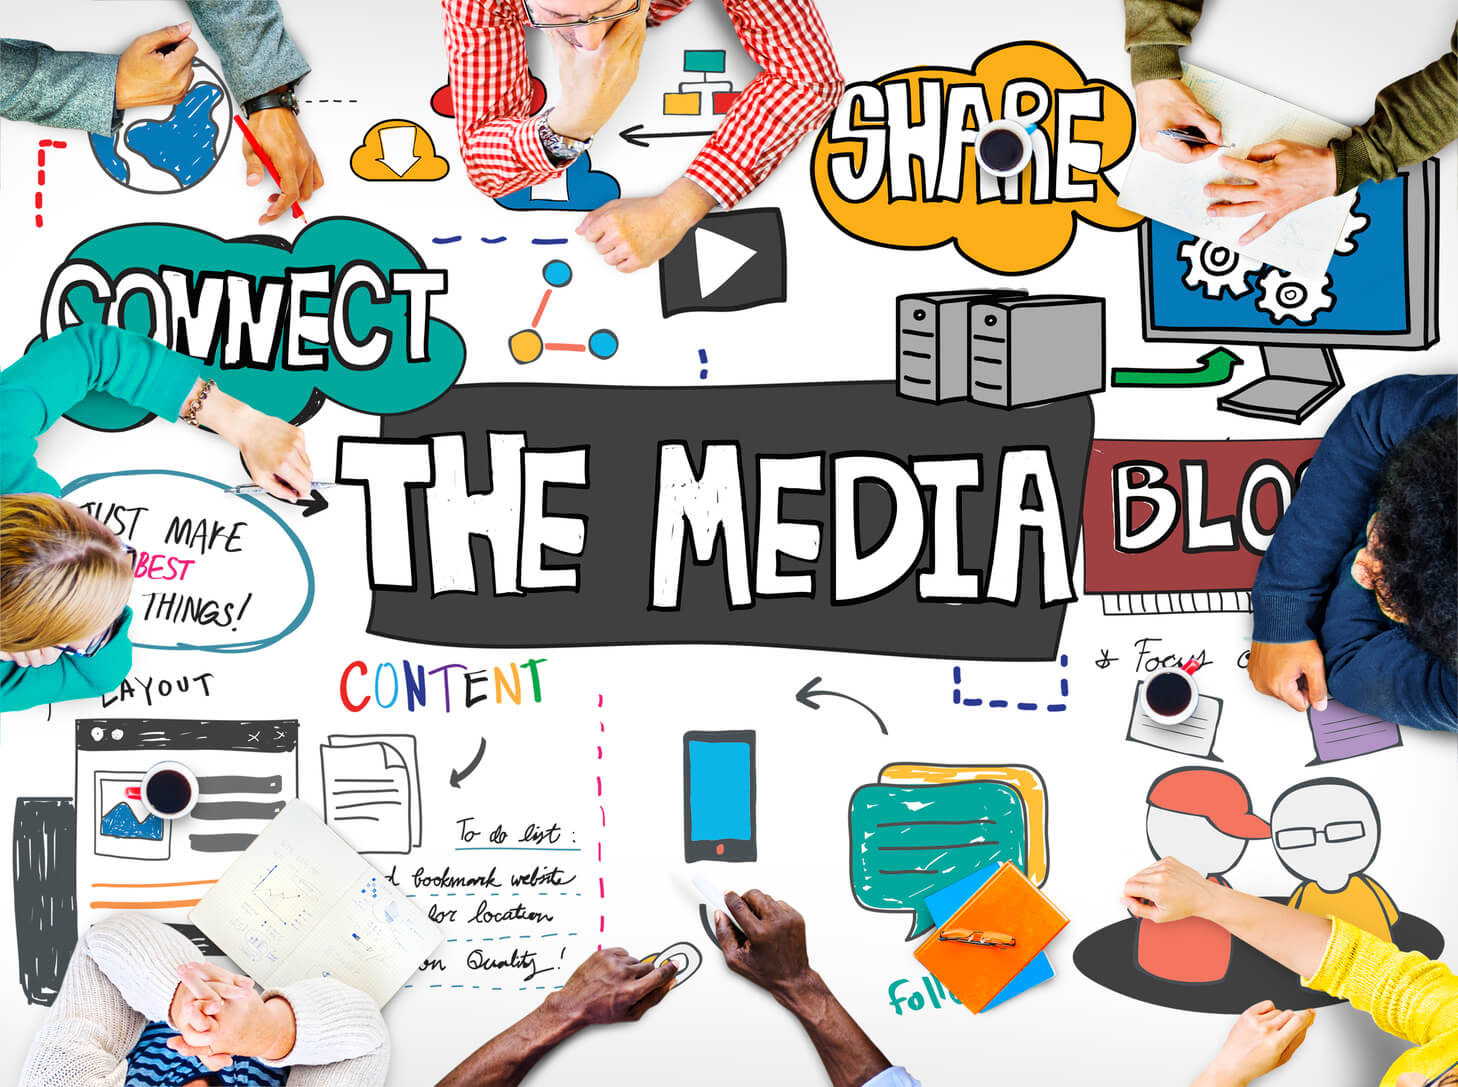 PR会社が関連するメディアの種類と特徴